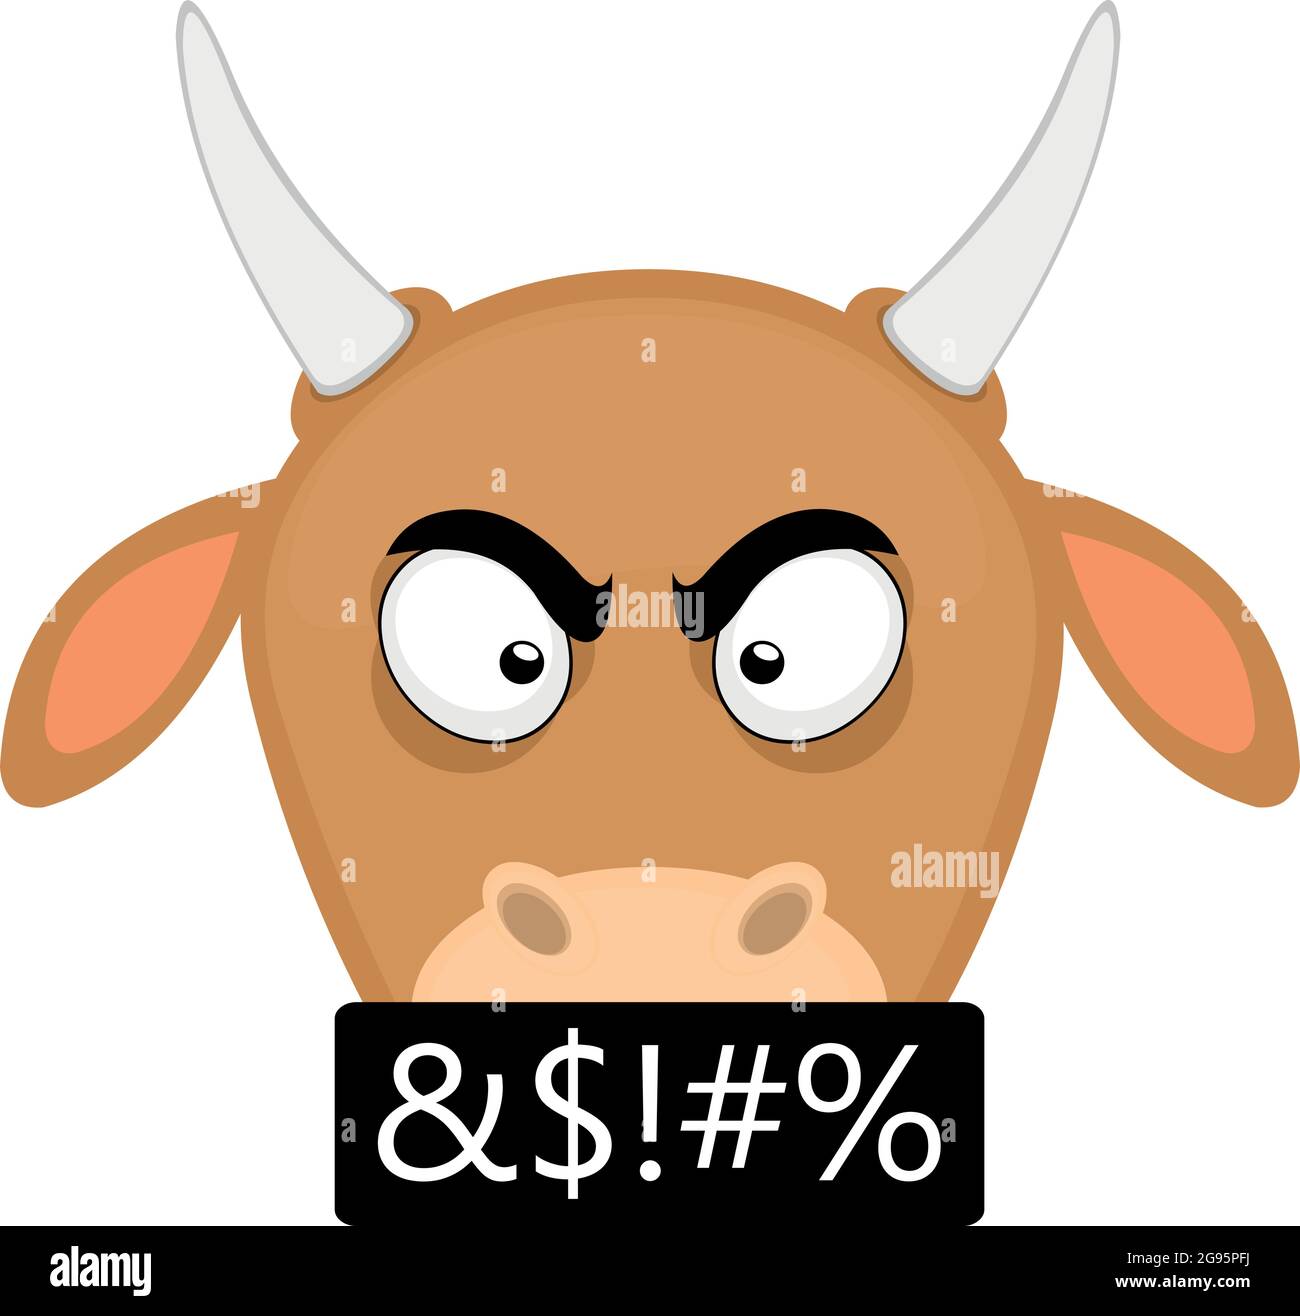 Vecteur émoticône illustration dessin animé de la tête d'une vache avec une expression en colère et curing Illustration de Vecteur